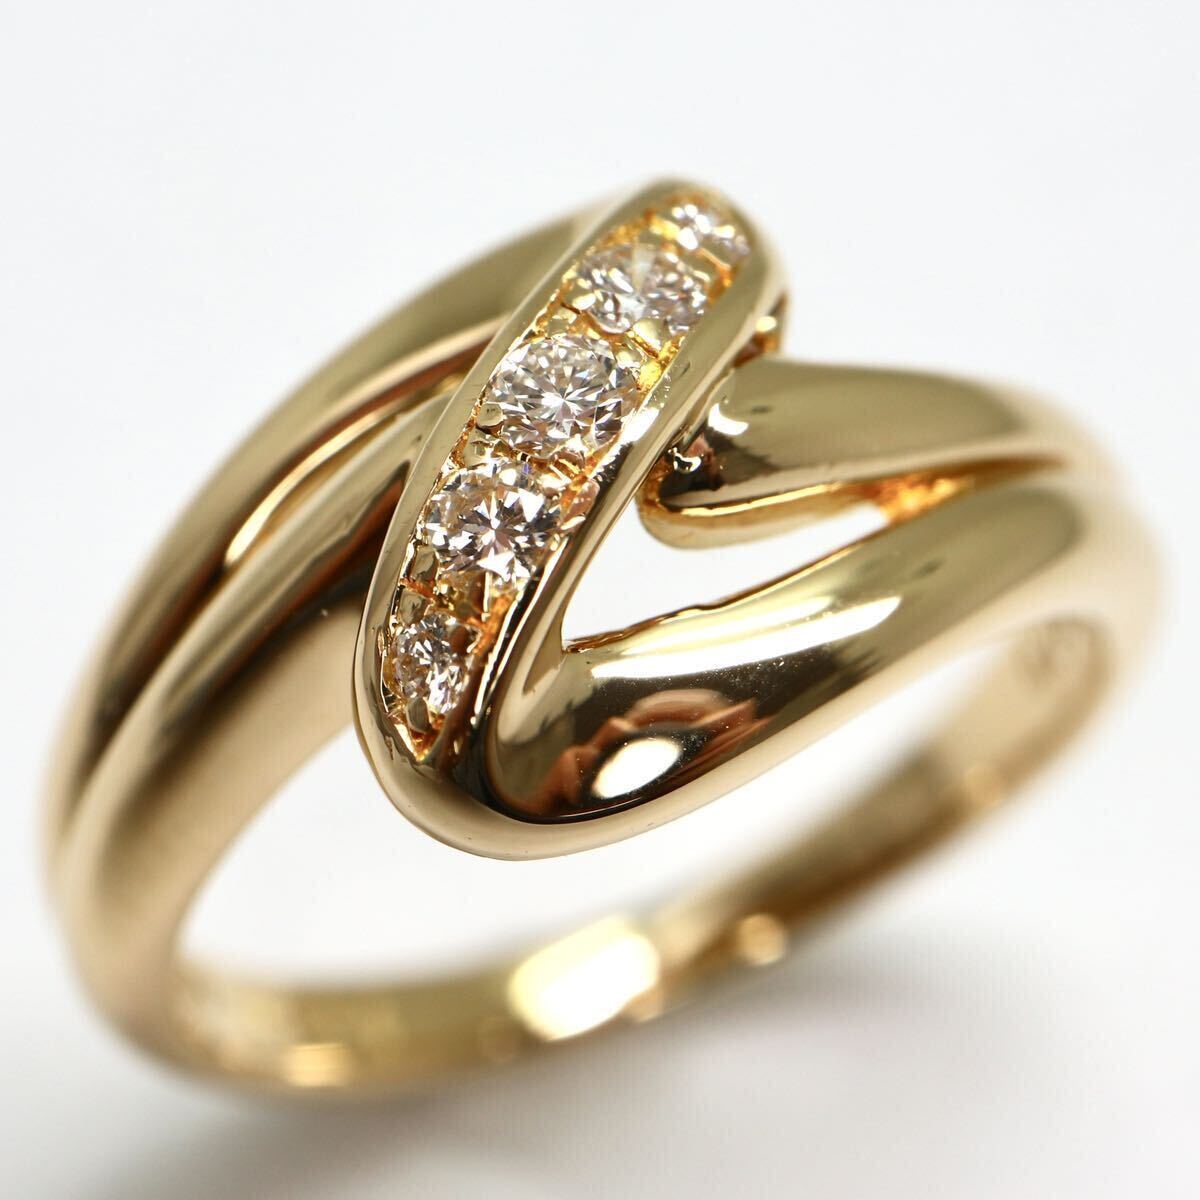 POLA jewelry(ポーラ)《K18 天然ダイヤモンドリング》A 約4.4g 11号 0.11ct diamond ジュエリー ring 指輪 EC8/Eの画像2